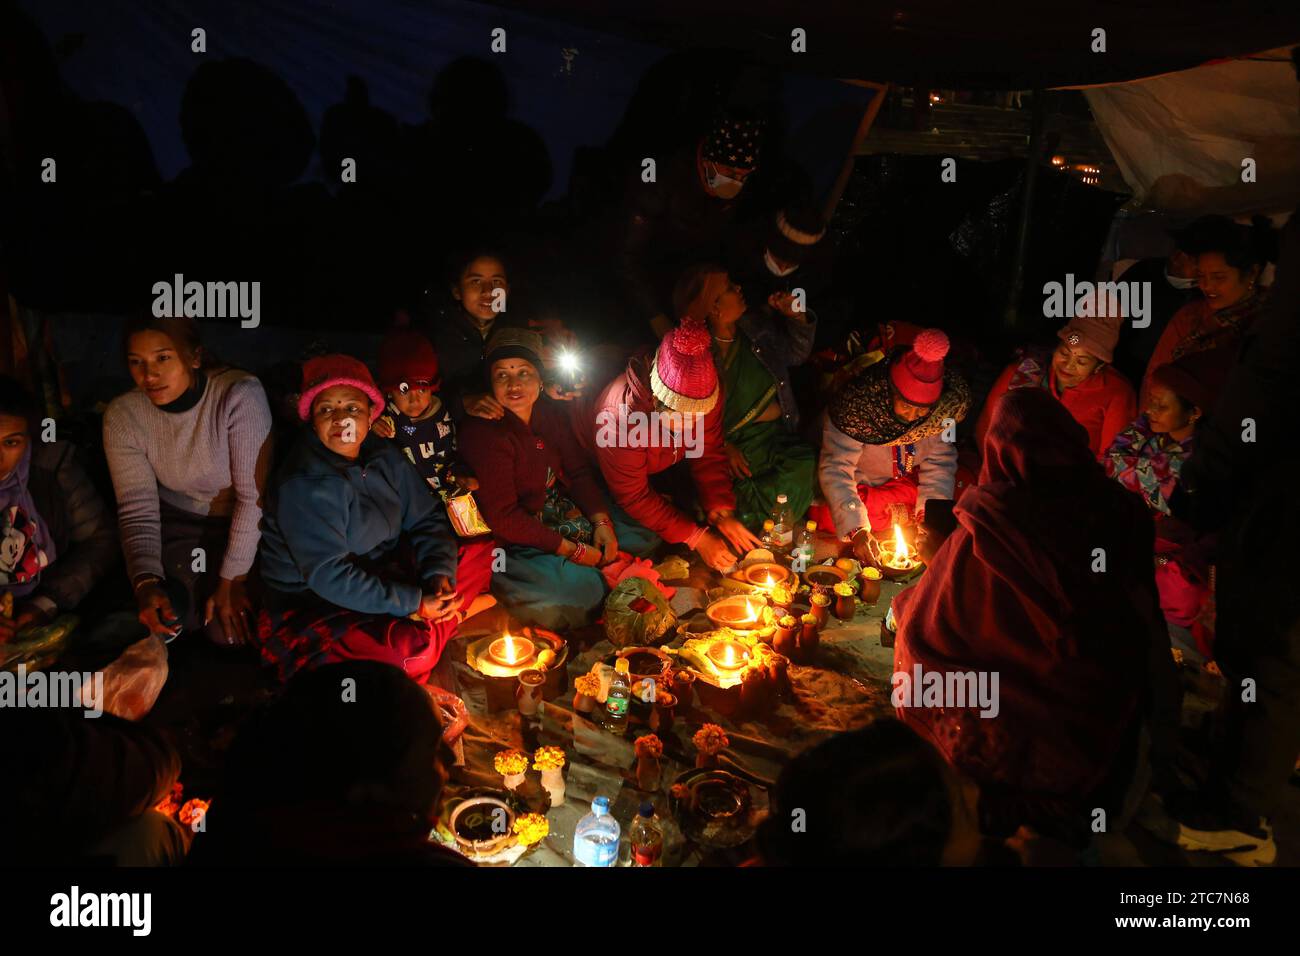 Eva of Bala Chaturdashi Festival in Nepal Nepali Hindu-Anhänger führen verschiedene Rituale am Vorabend des Bala Chaturdashi Festivals rund um den Pashupatinath Tempel in Kathmandu durch. Das Festival von Bala Chaturdashi beginnt an Marga Krishna Trayodashi, dem 13. Tag des abnehmenden Mondes im Monat Mangsir 8. Monat nach nepalesischem Kalender. Gläubige, die dieses Ritual einhalten, pflegen strenges Fasten, mit nur einer Mahlzeit an diesem Tag und verzichten auf Knoblauch, Zwiebeln, Fisch, Eier und andere Lebensmittel, die angeblich unrein sind. Am Abend erreichen sie den Pashupatinath-Tempel oder Schreine, die dem Herrn geweiht sind Stockfoto